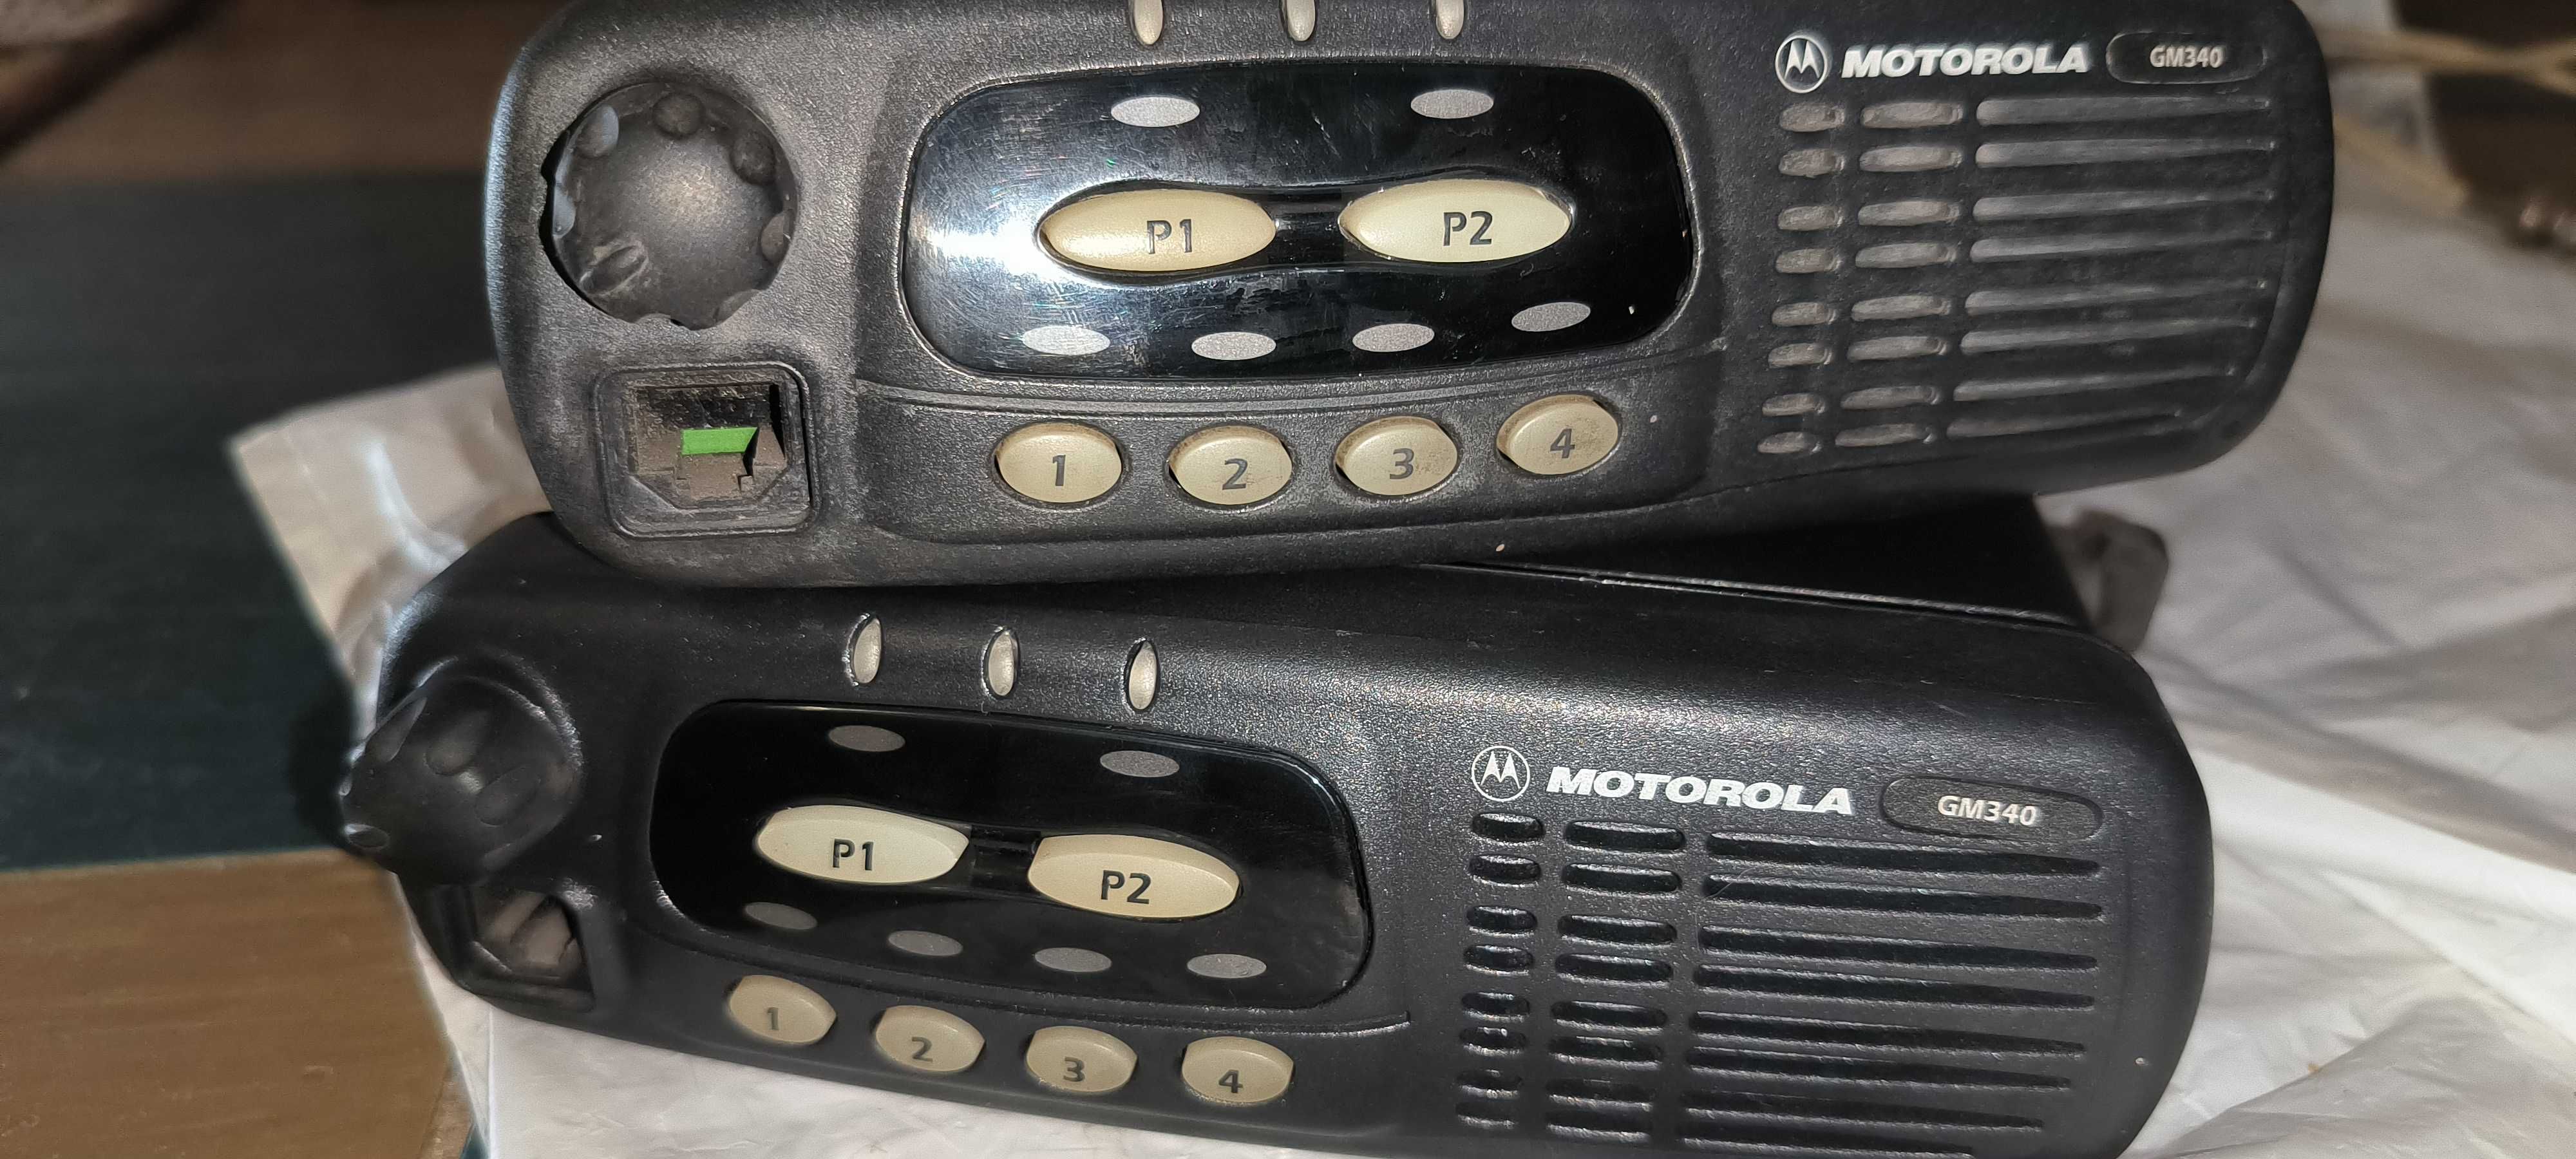 Радиостанция Motorola GM340 две штуки плюс дуплексор